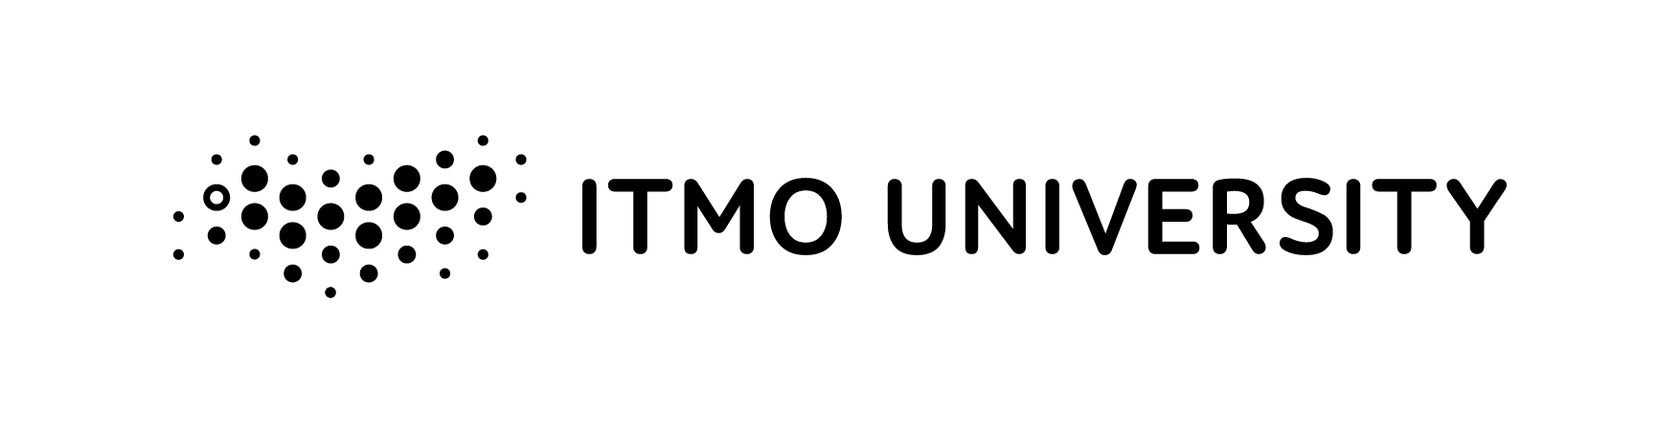 Университет ИТМО лого